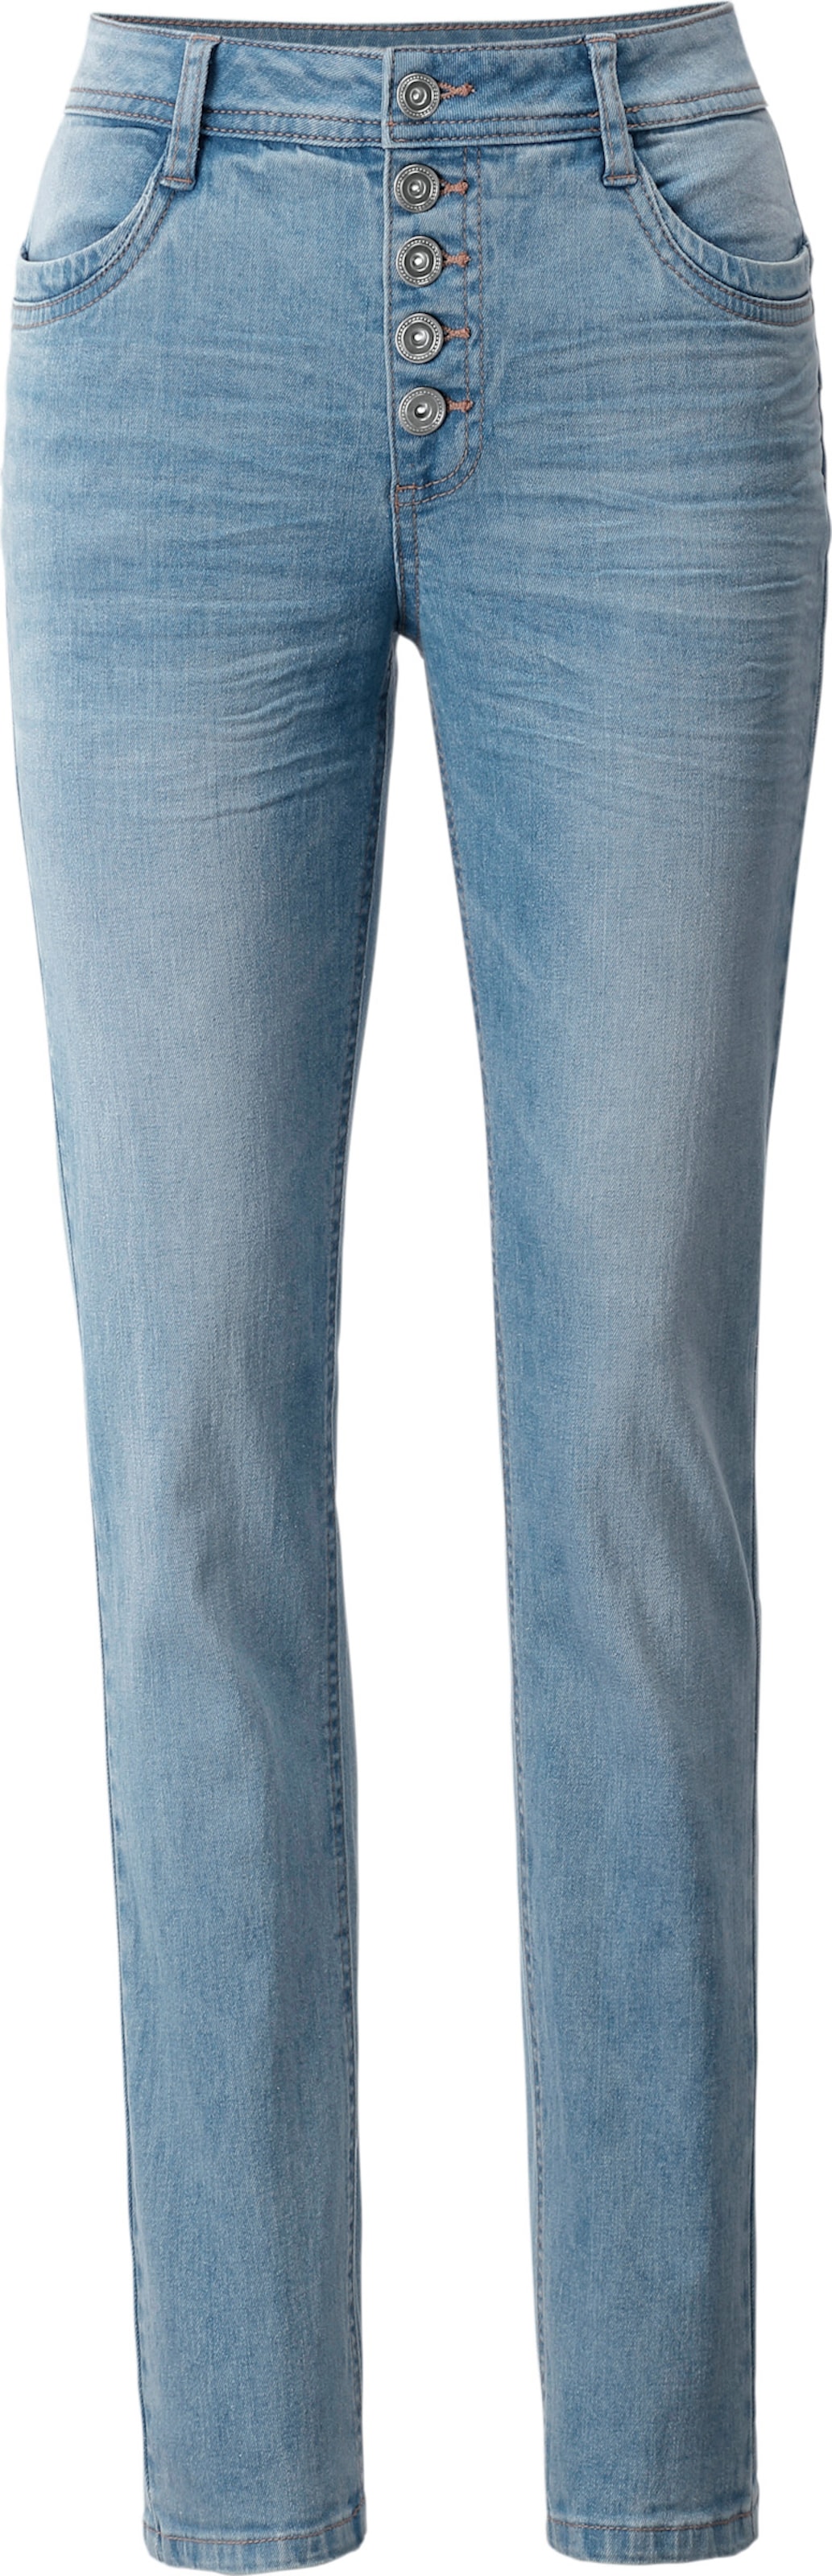 Push günstig Kaufen-Push-up-Jeans in blue-bleached von heine. Push-up-Jeans in blue-bleached von heine <![CDATA[Push-up-Jeans Formt einen knackigen Po! Hochwertige Stretch-Qualität in modischer Used-Optik mit Sitzfalten. Formbund mit sichtbarem Knopfverschluss, Eingrifftasc